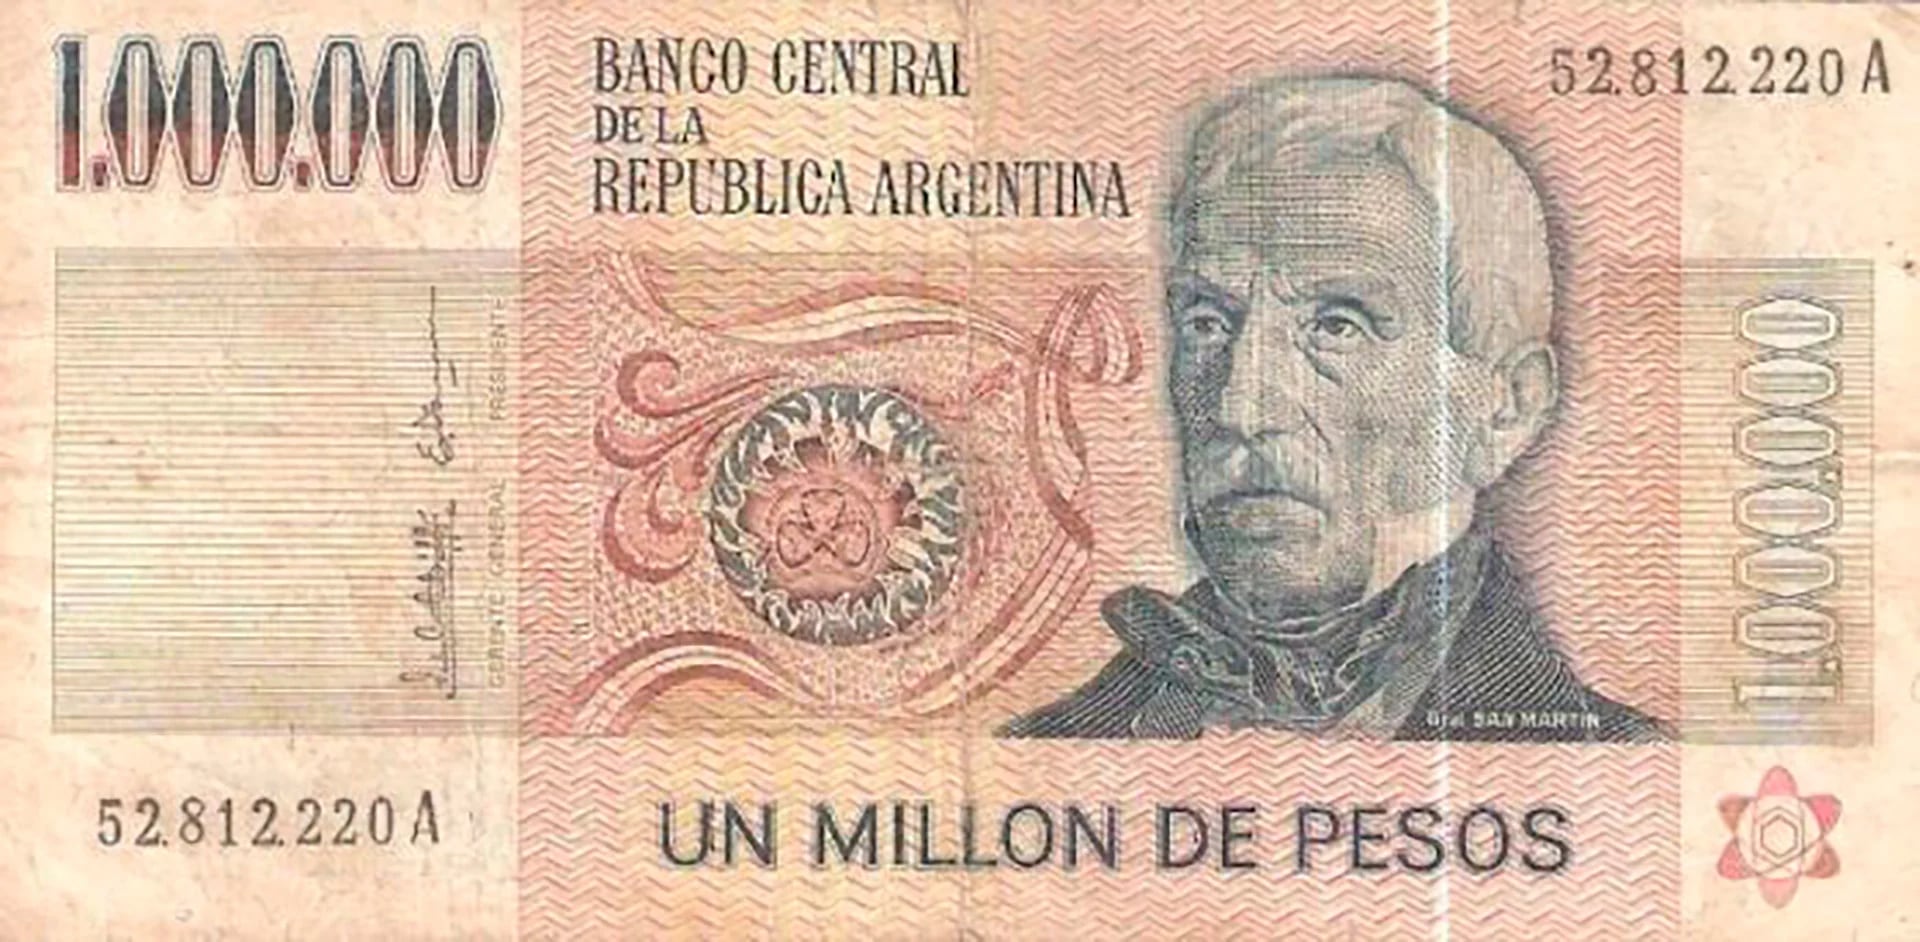 million pesos